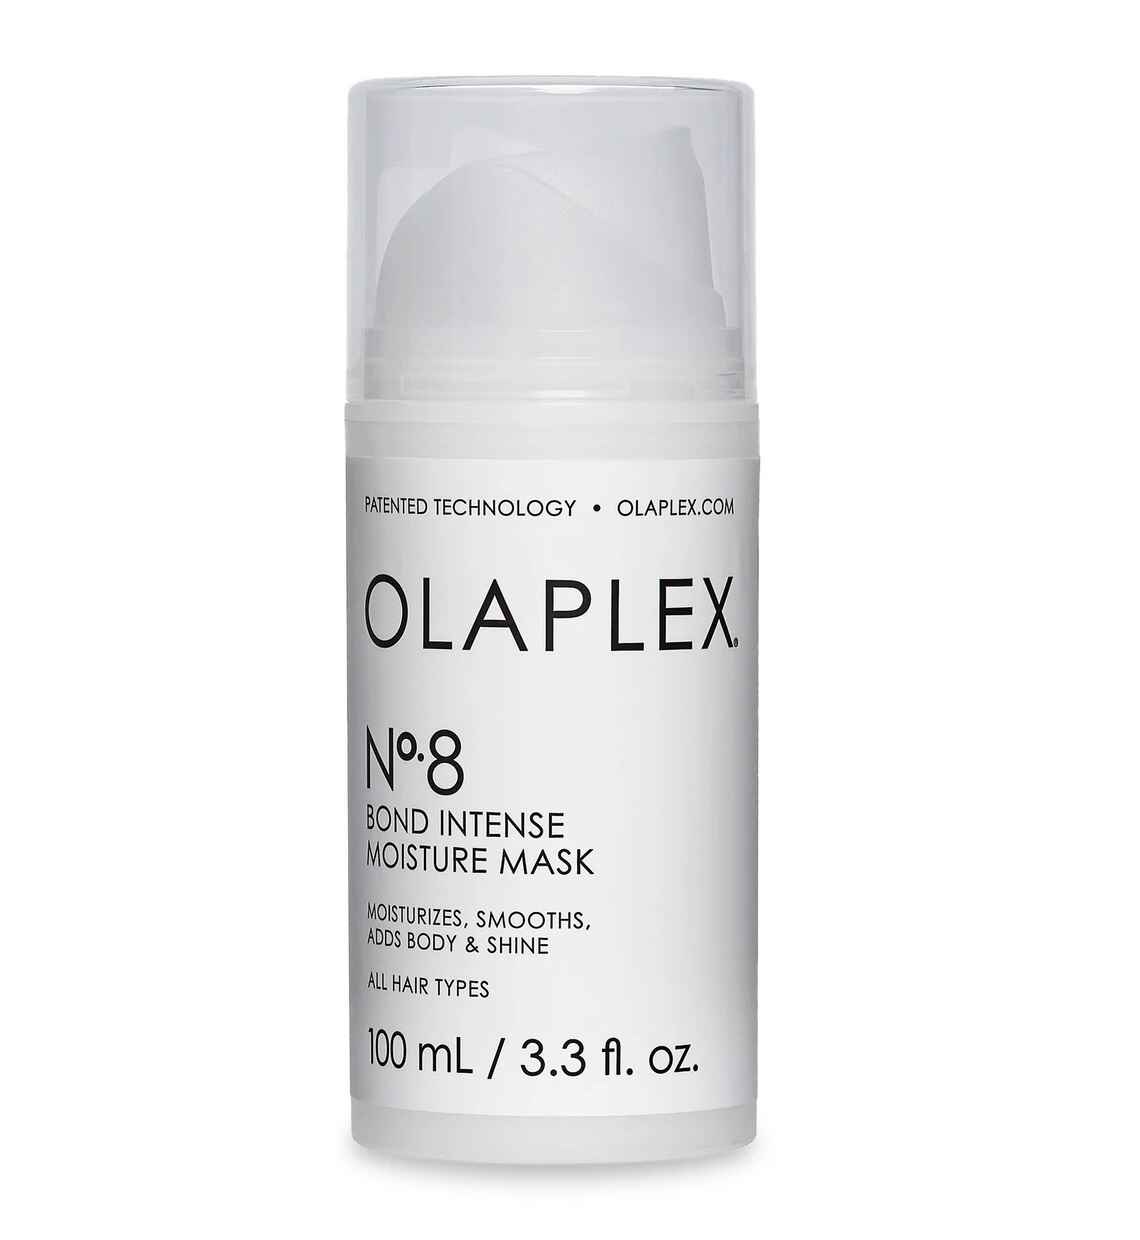 معرفی و مشخصات ماسک موی No8 اولاپلکس مدل باند اینتنس